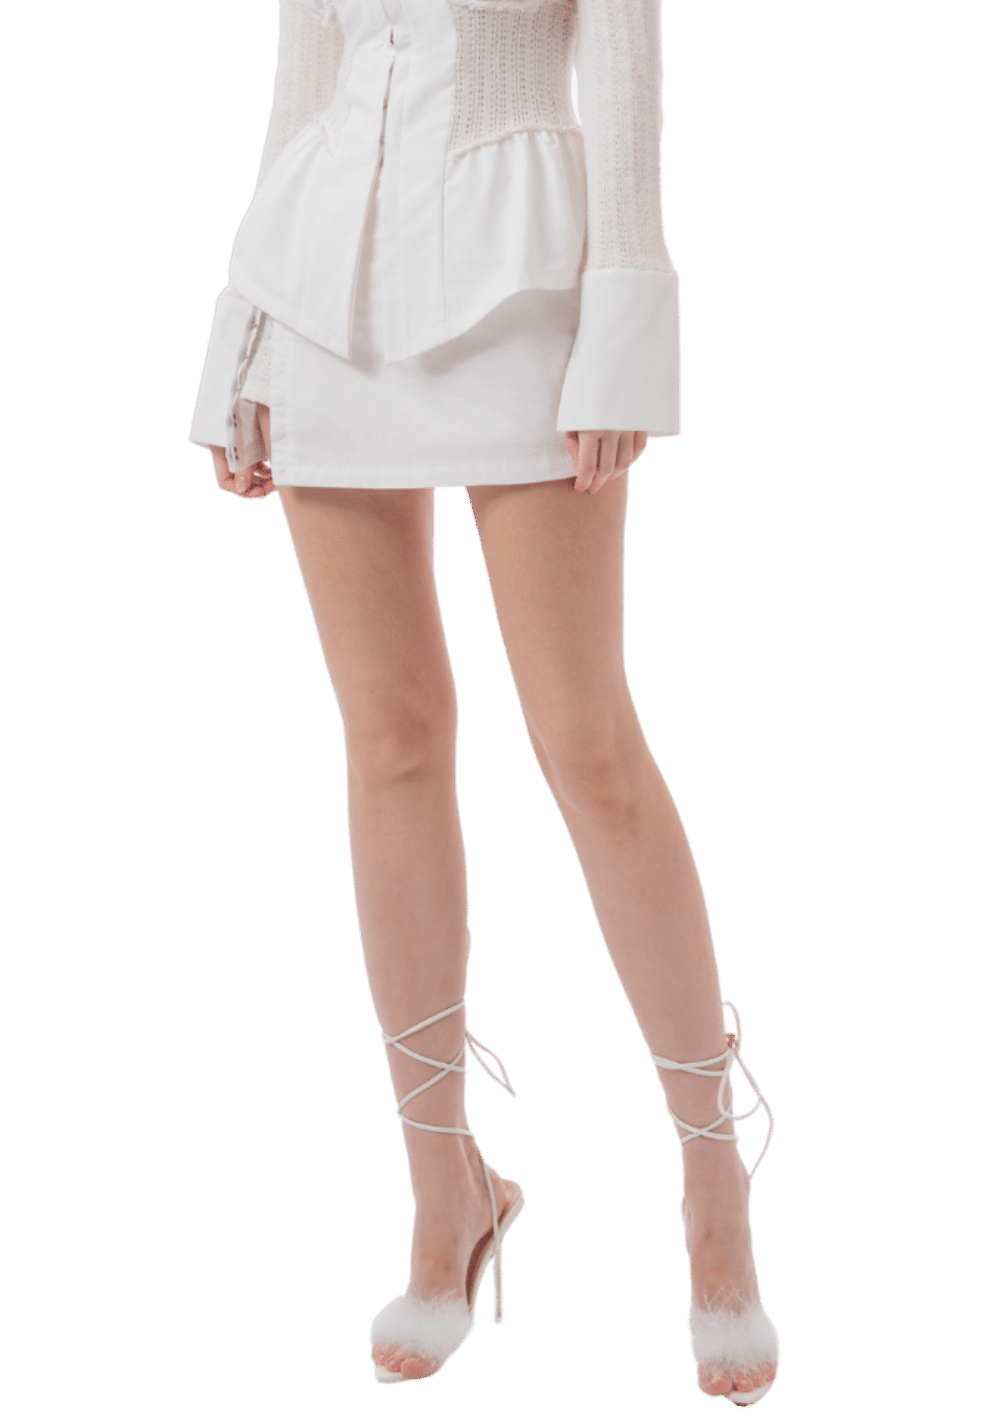 Straight Slit Skirt - PSYLOS 1, Straight Slit Skirt, Dress/Skirt, Jqwention, PSYLOS 1